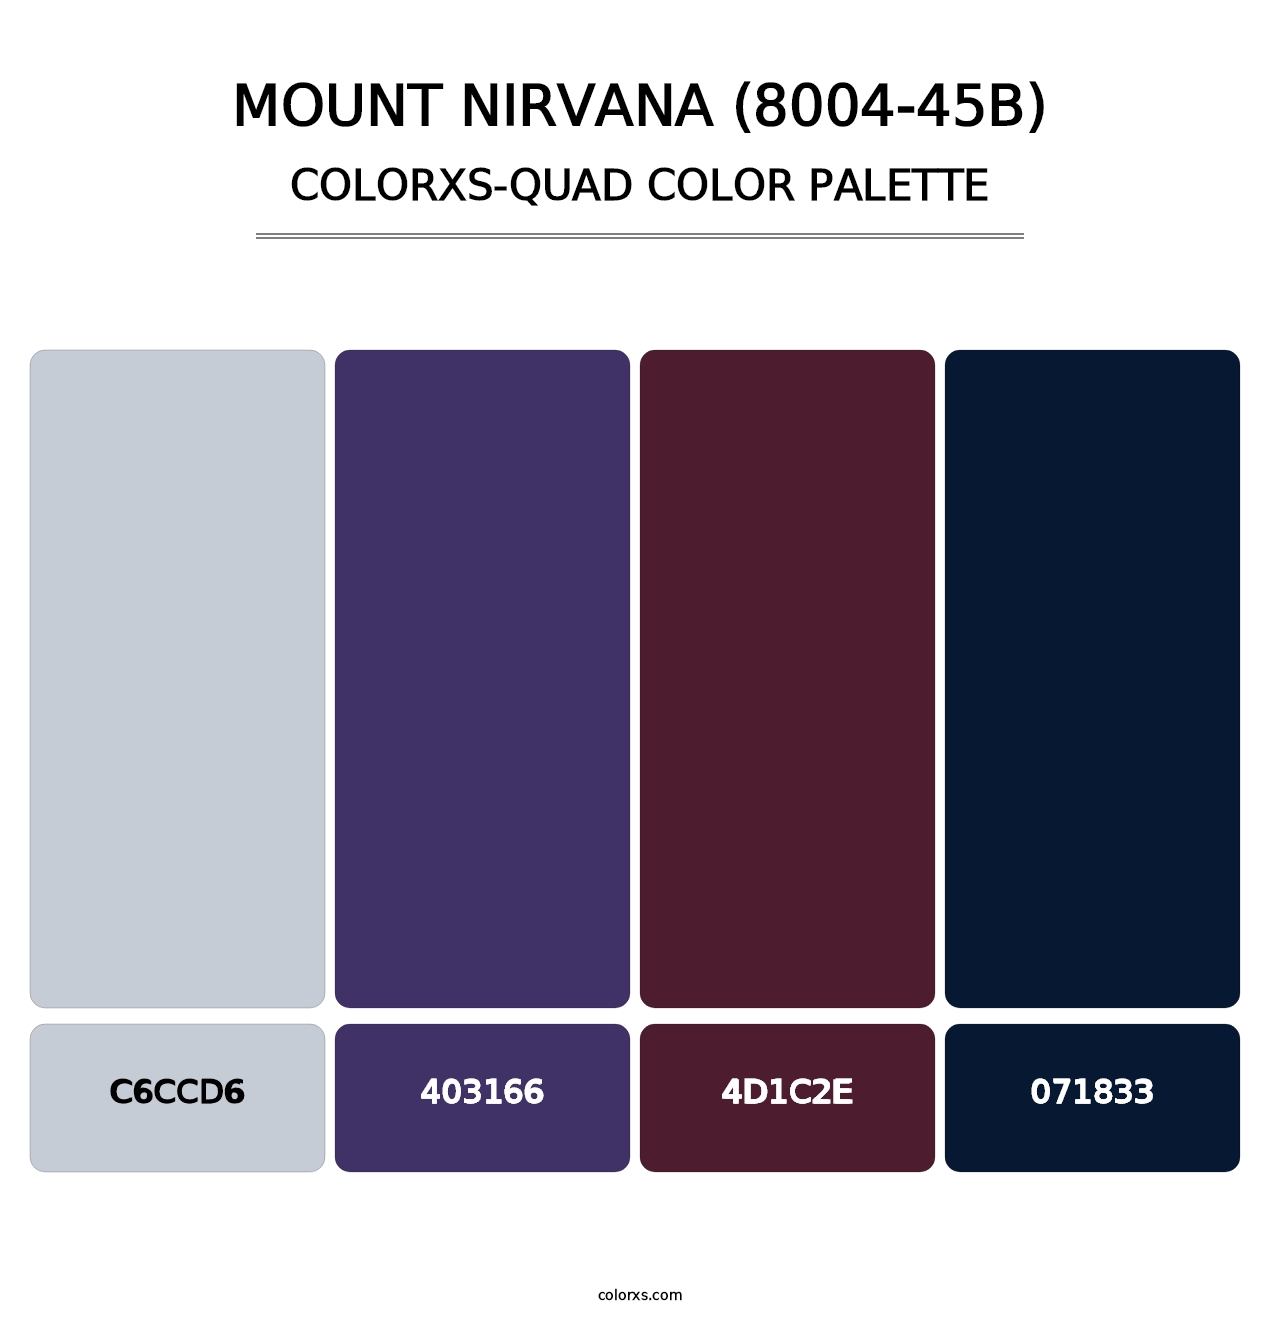 Mount Nirvana (8004-45B) - Colorxs Quad Palette